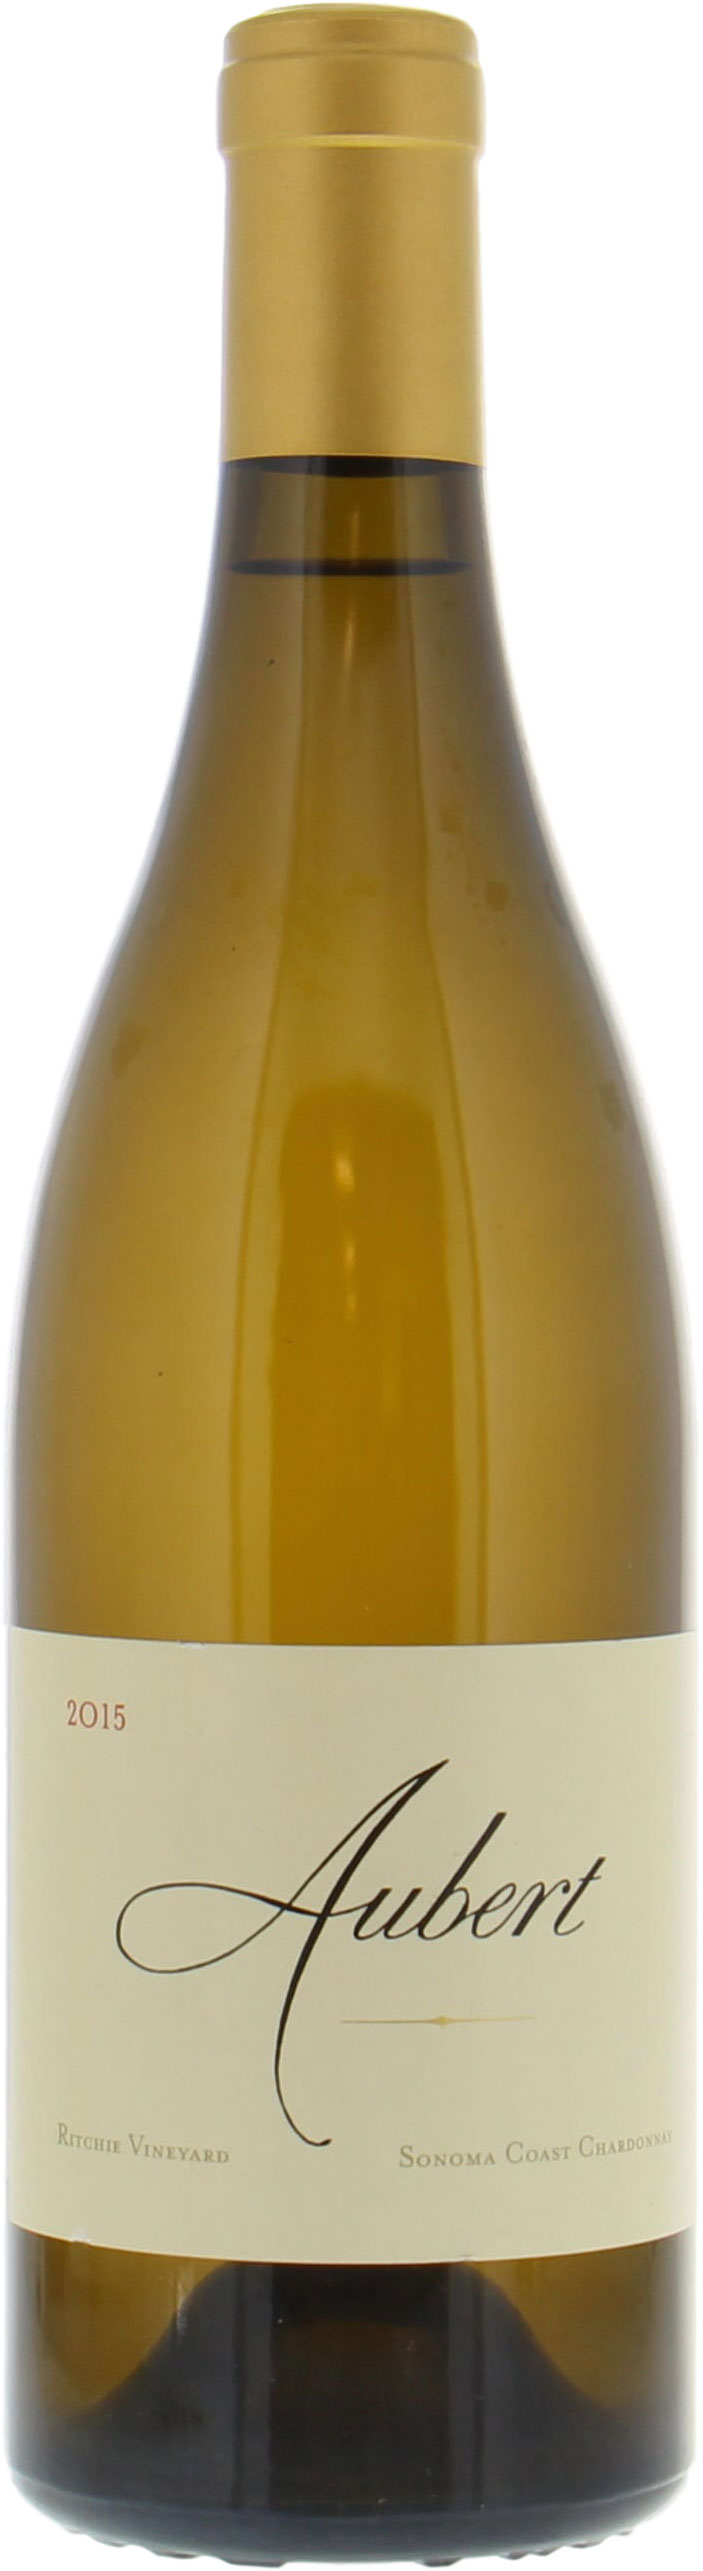 Aubert - Ritchie Chardonnay 2015